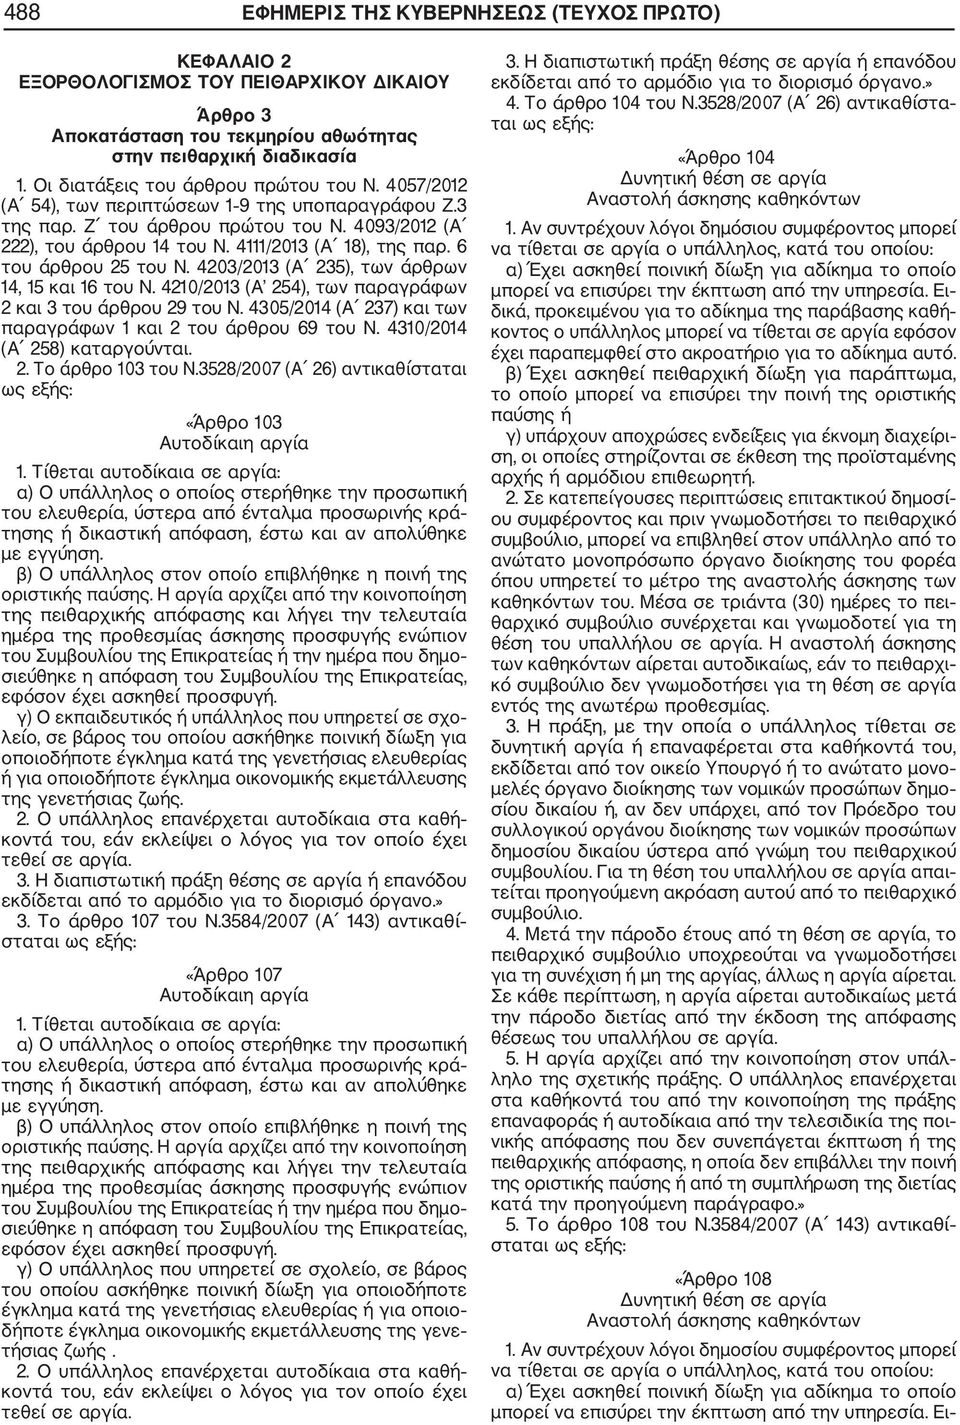 6 του άρθρου 25 του Ν. 4203/2013 (Α 235), των άρθρων 14, 15 και 16 του Ν. 4210/2013 (Α 254), των παραγράφων 2 και 3 του άρθρου 29 του Ν.